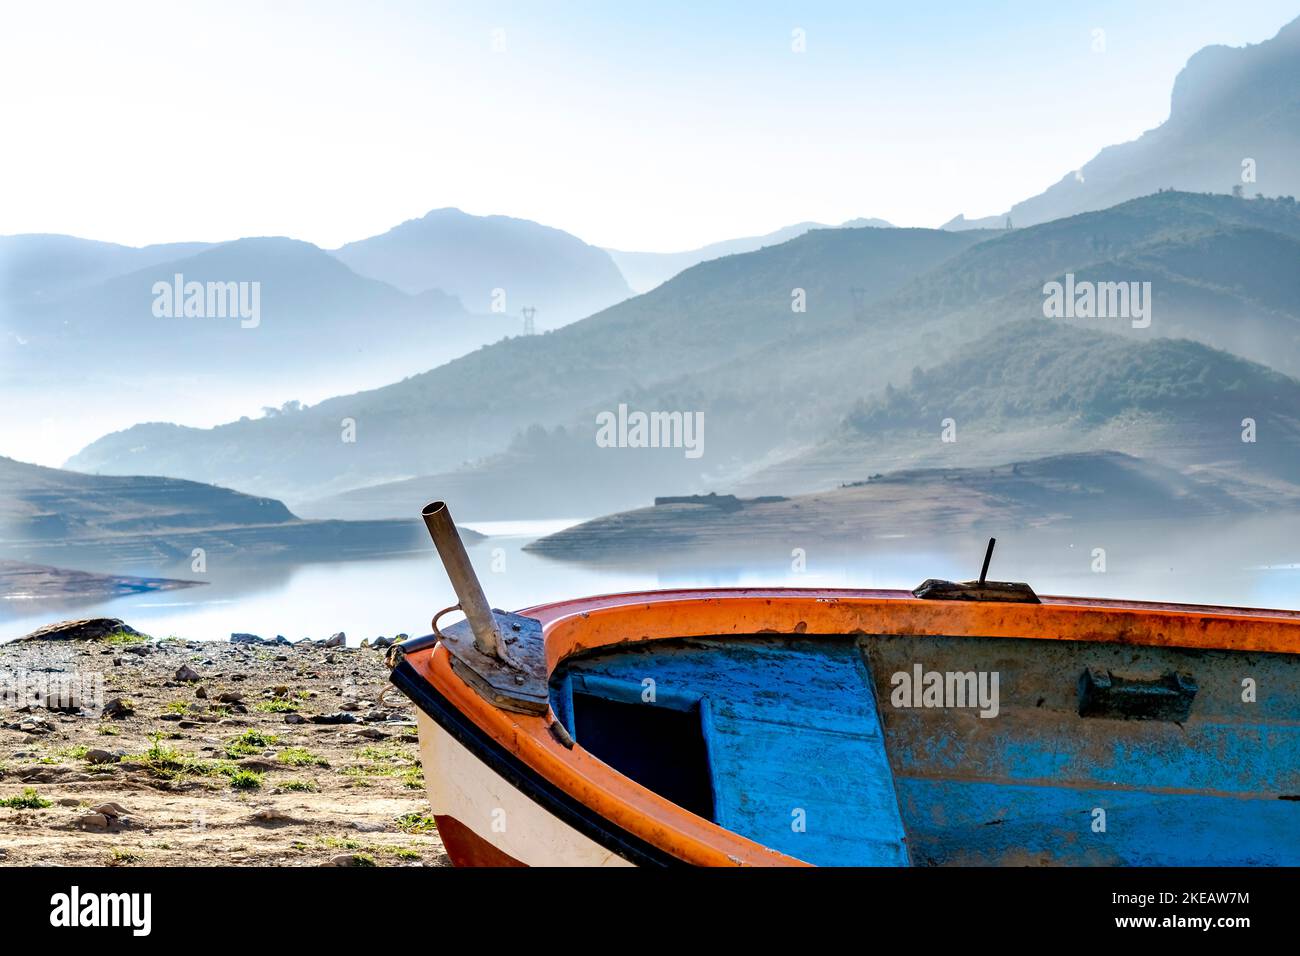 Vieux canot en bois, bateau bleu, orange et blanc coincé sur le rivage de terre sèche dans le barrage du lac de Bouzegza Keddara avec des montagnes brumeuses reflétées. Banque D'Images